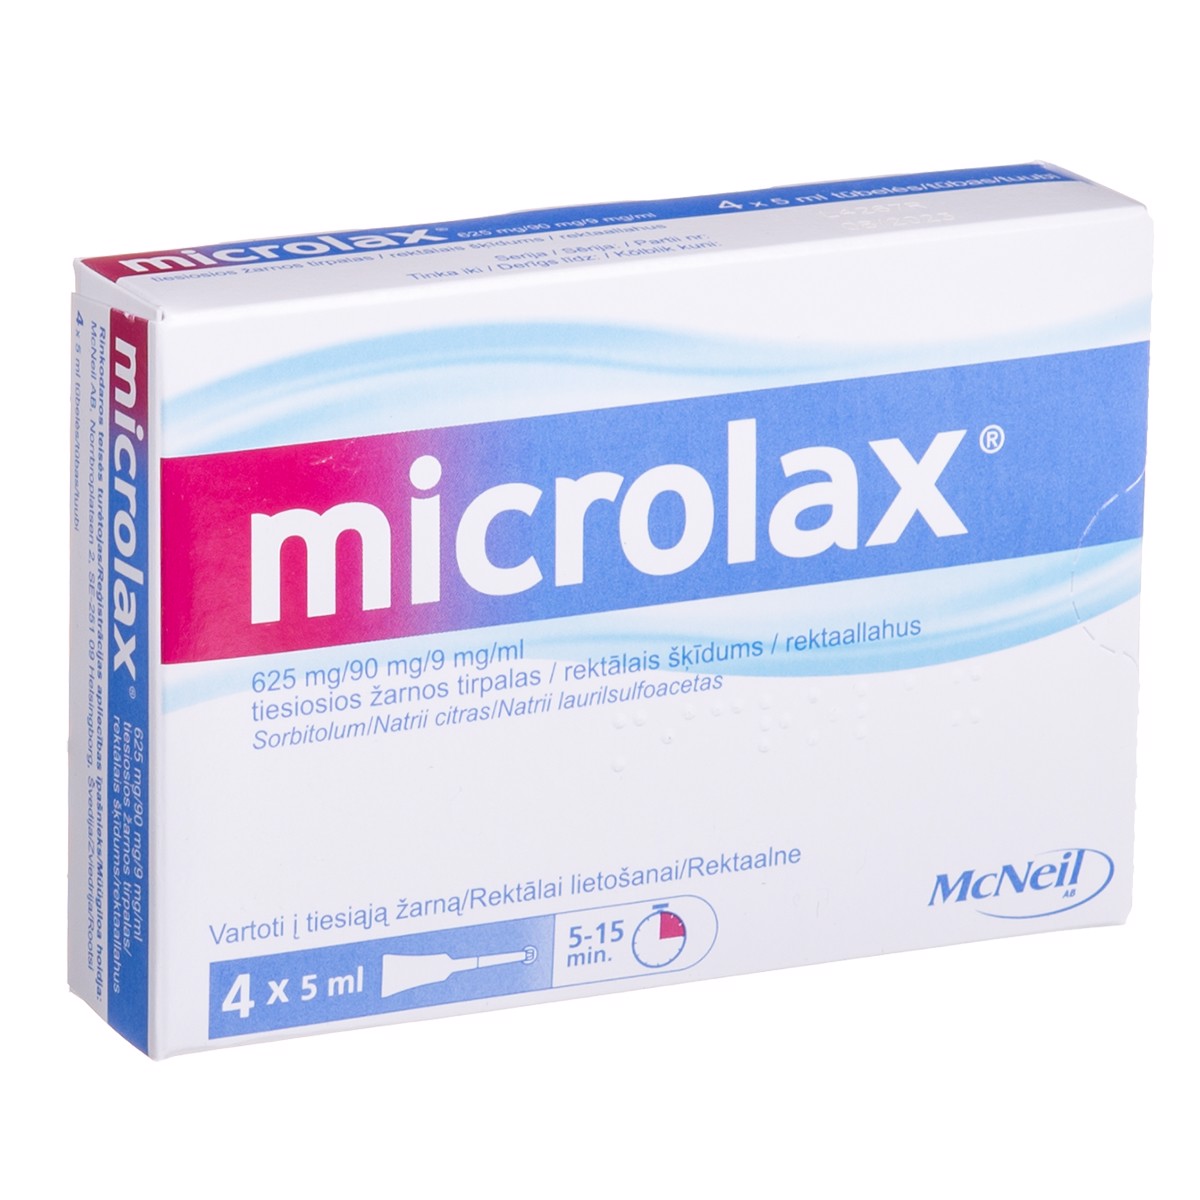 MICROLAX, 625 mg/90 mg/9 mg/ml, tiesiosios žarnos tirpalas, 5 ml, N4